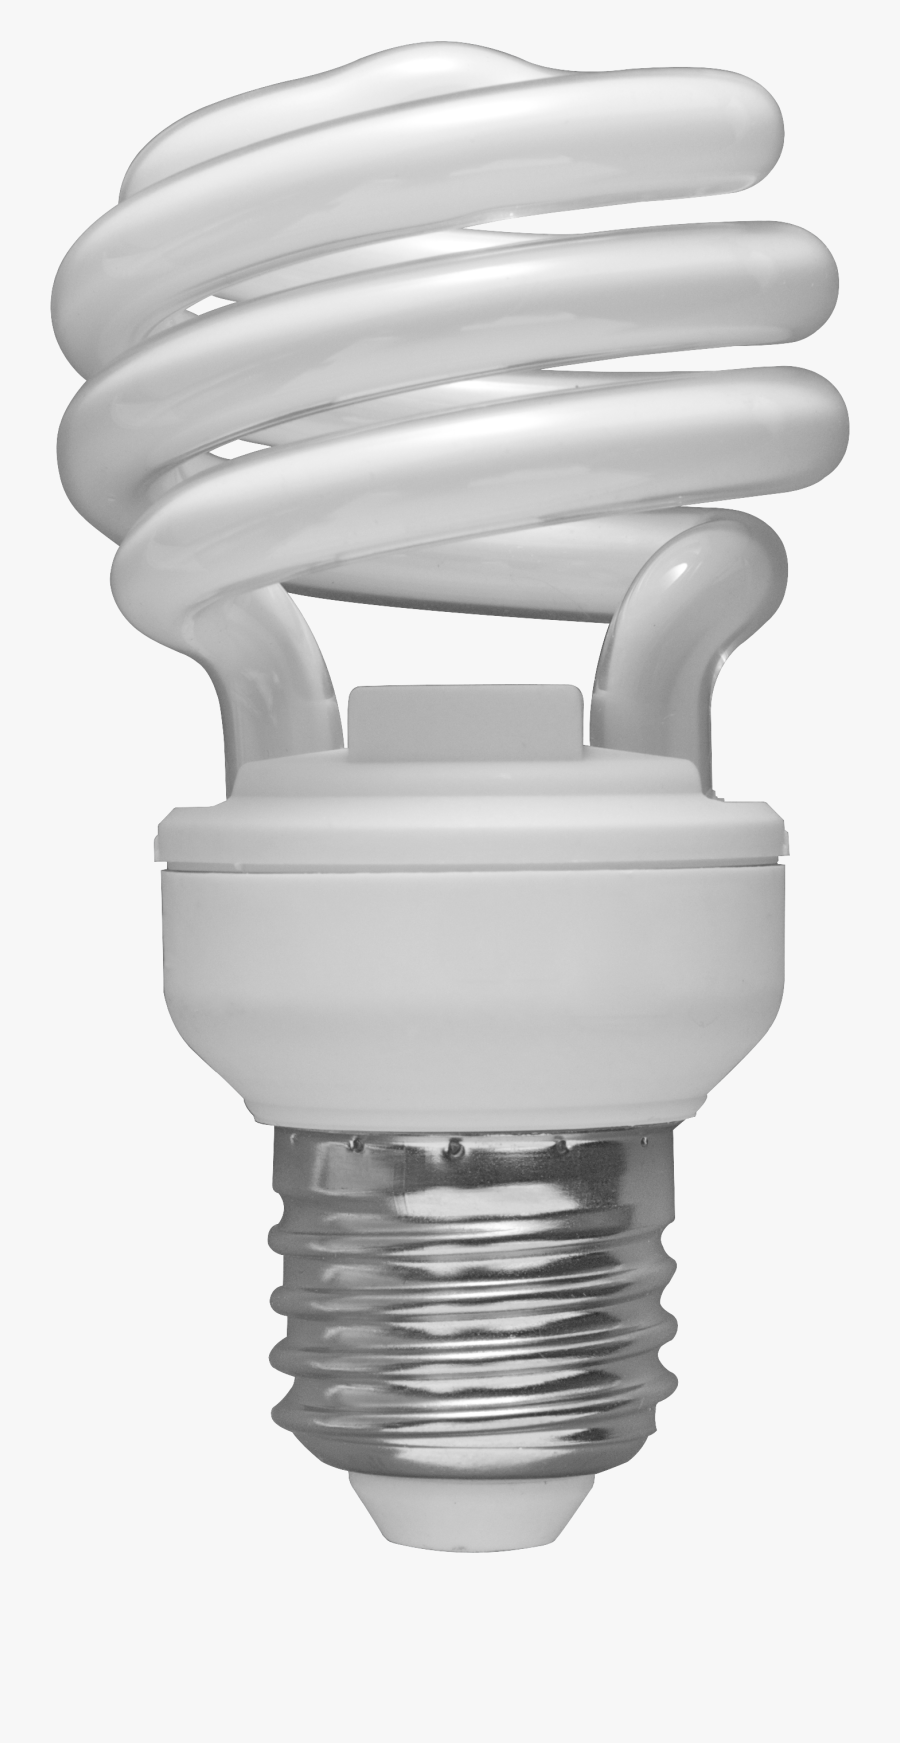 Cfl Bulb - Fluorescent Light Bulbs Png, Transparent Clipart